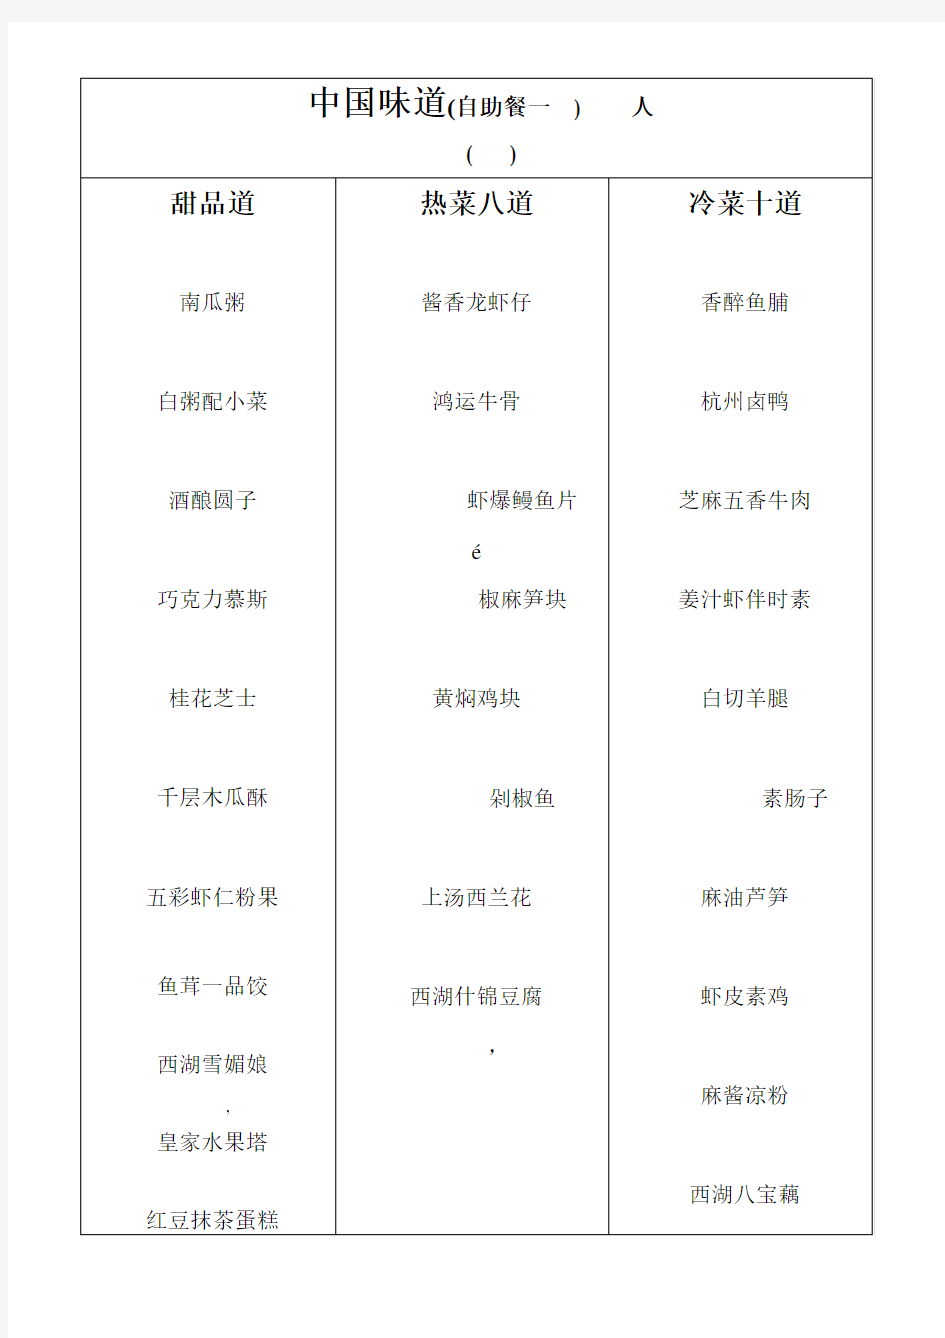 中国菜菜单(中英对照翻译)(活动za)